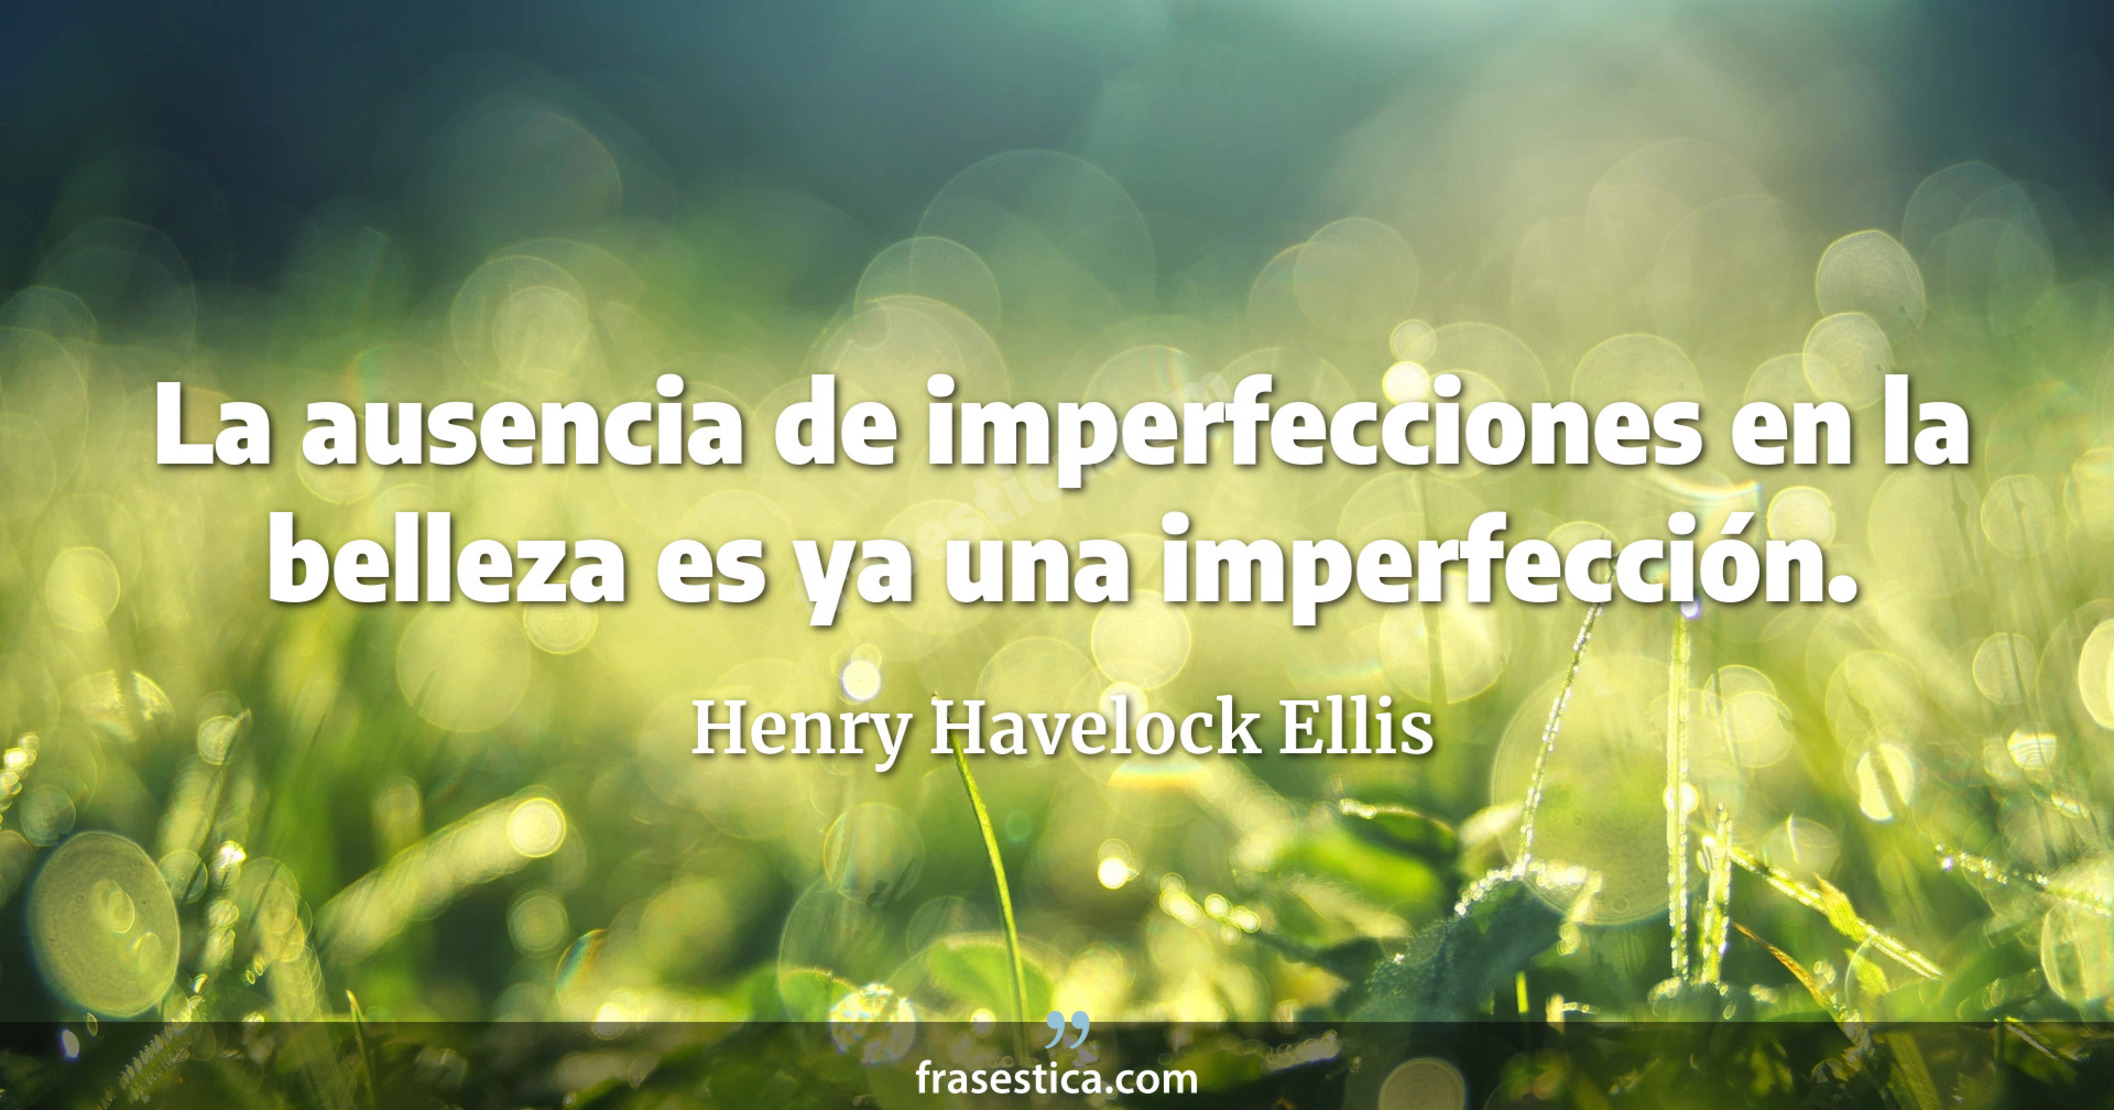 La ausencia de imperfecciones en la belleza es ya una imperfección. - Henry Havelock Ellis